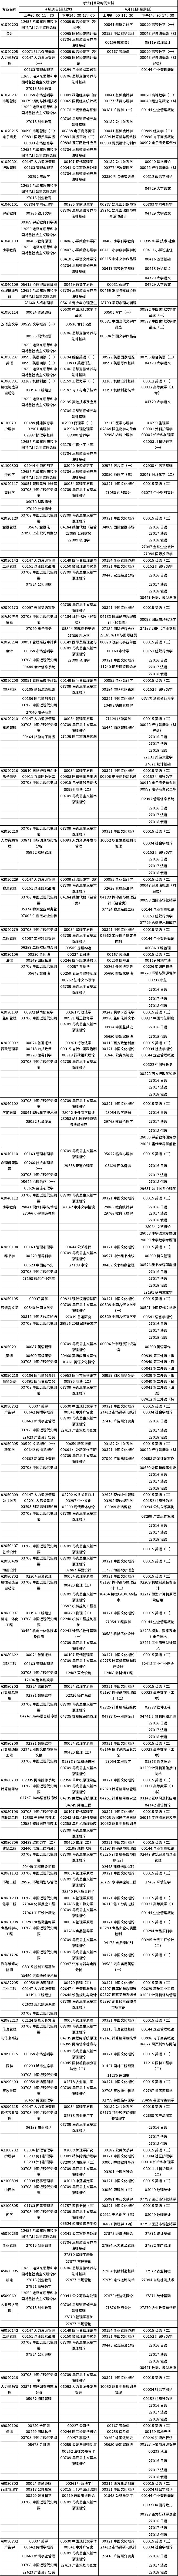 江苏2021年4月自学考试日程表